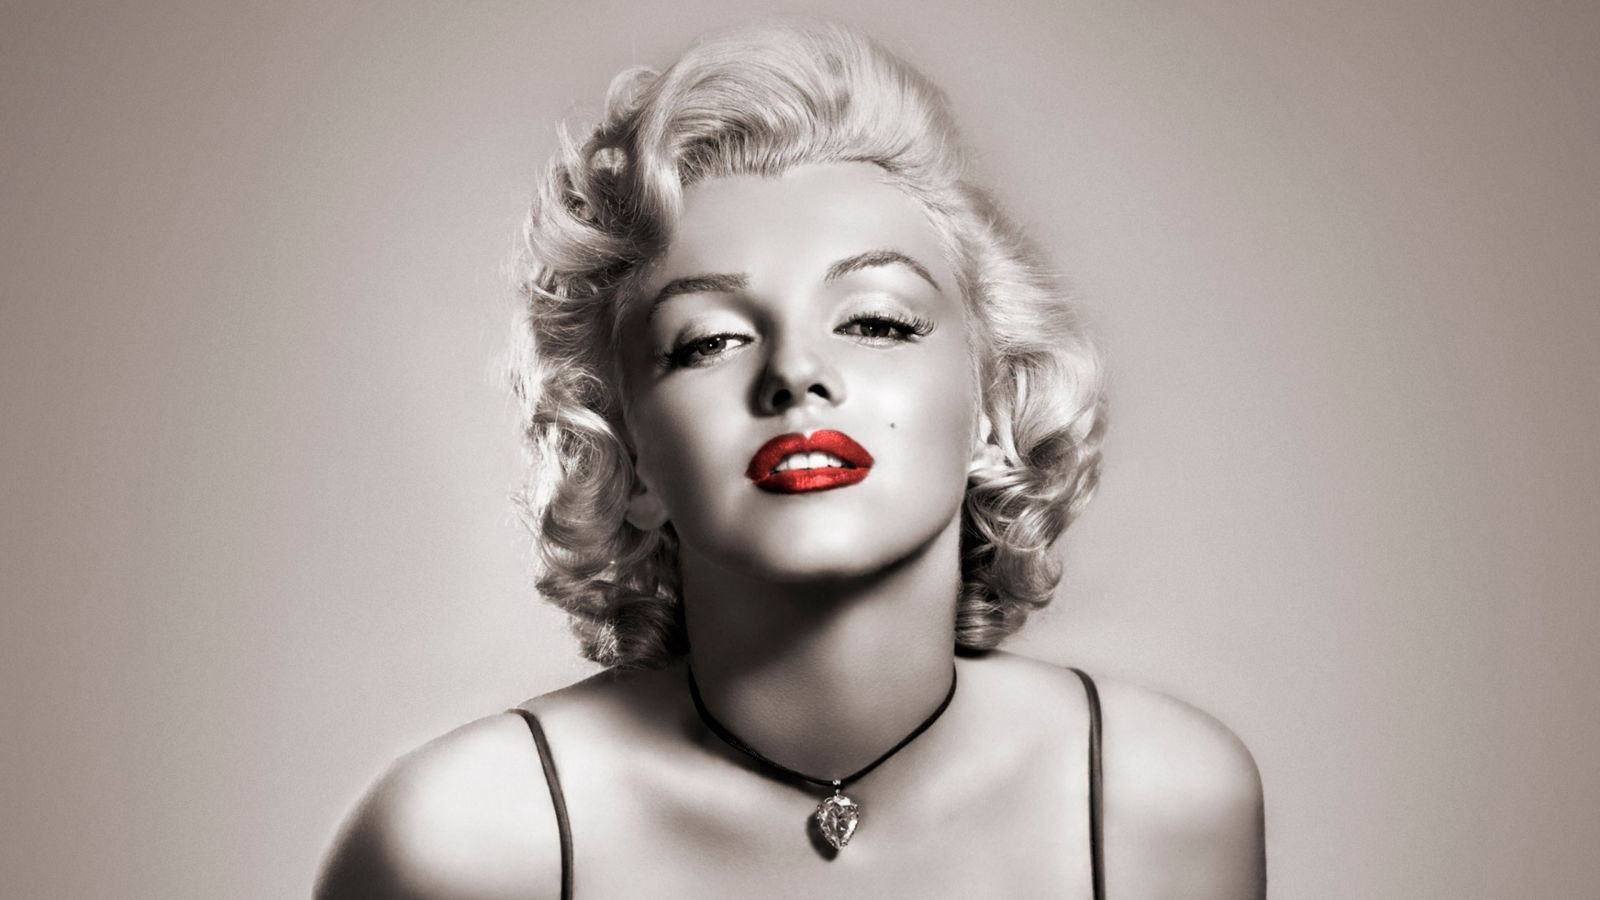 Marilyn Monroe Red Lips for 1600 x 900 HDTV resolution